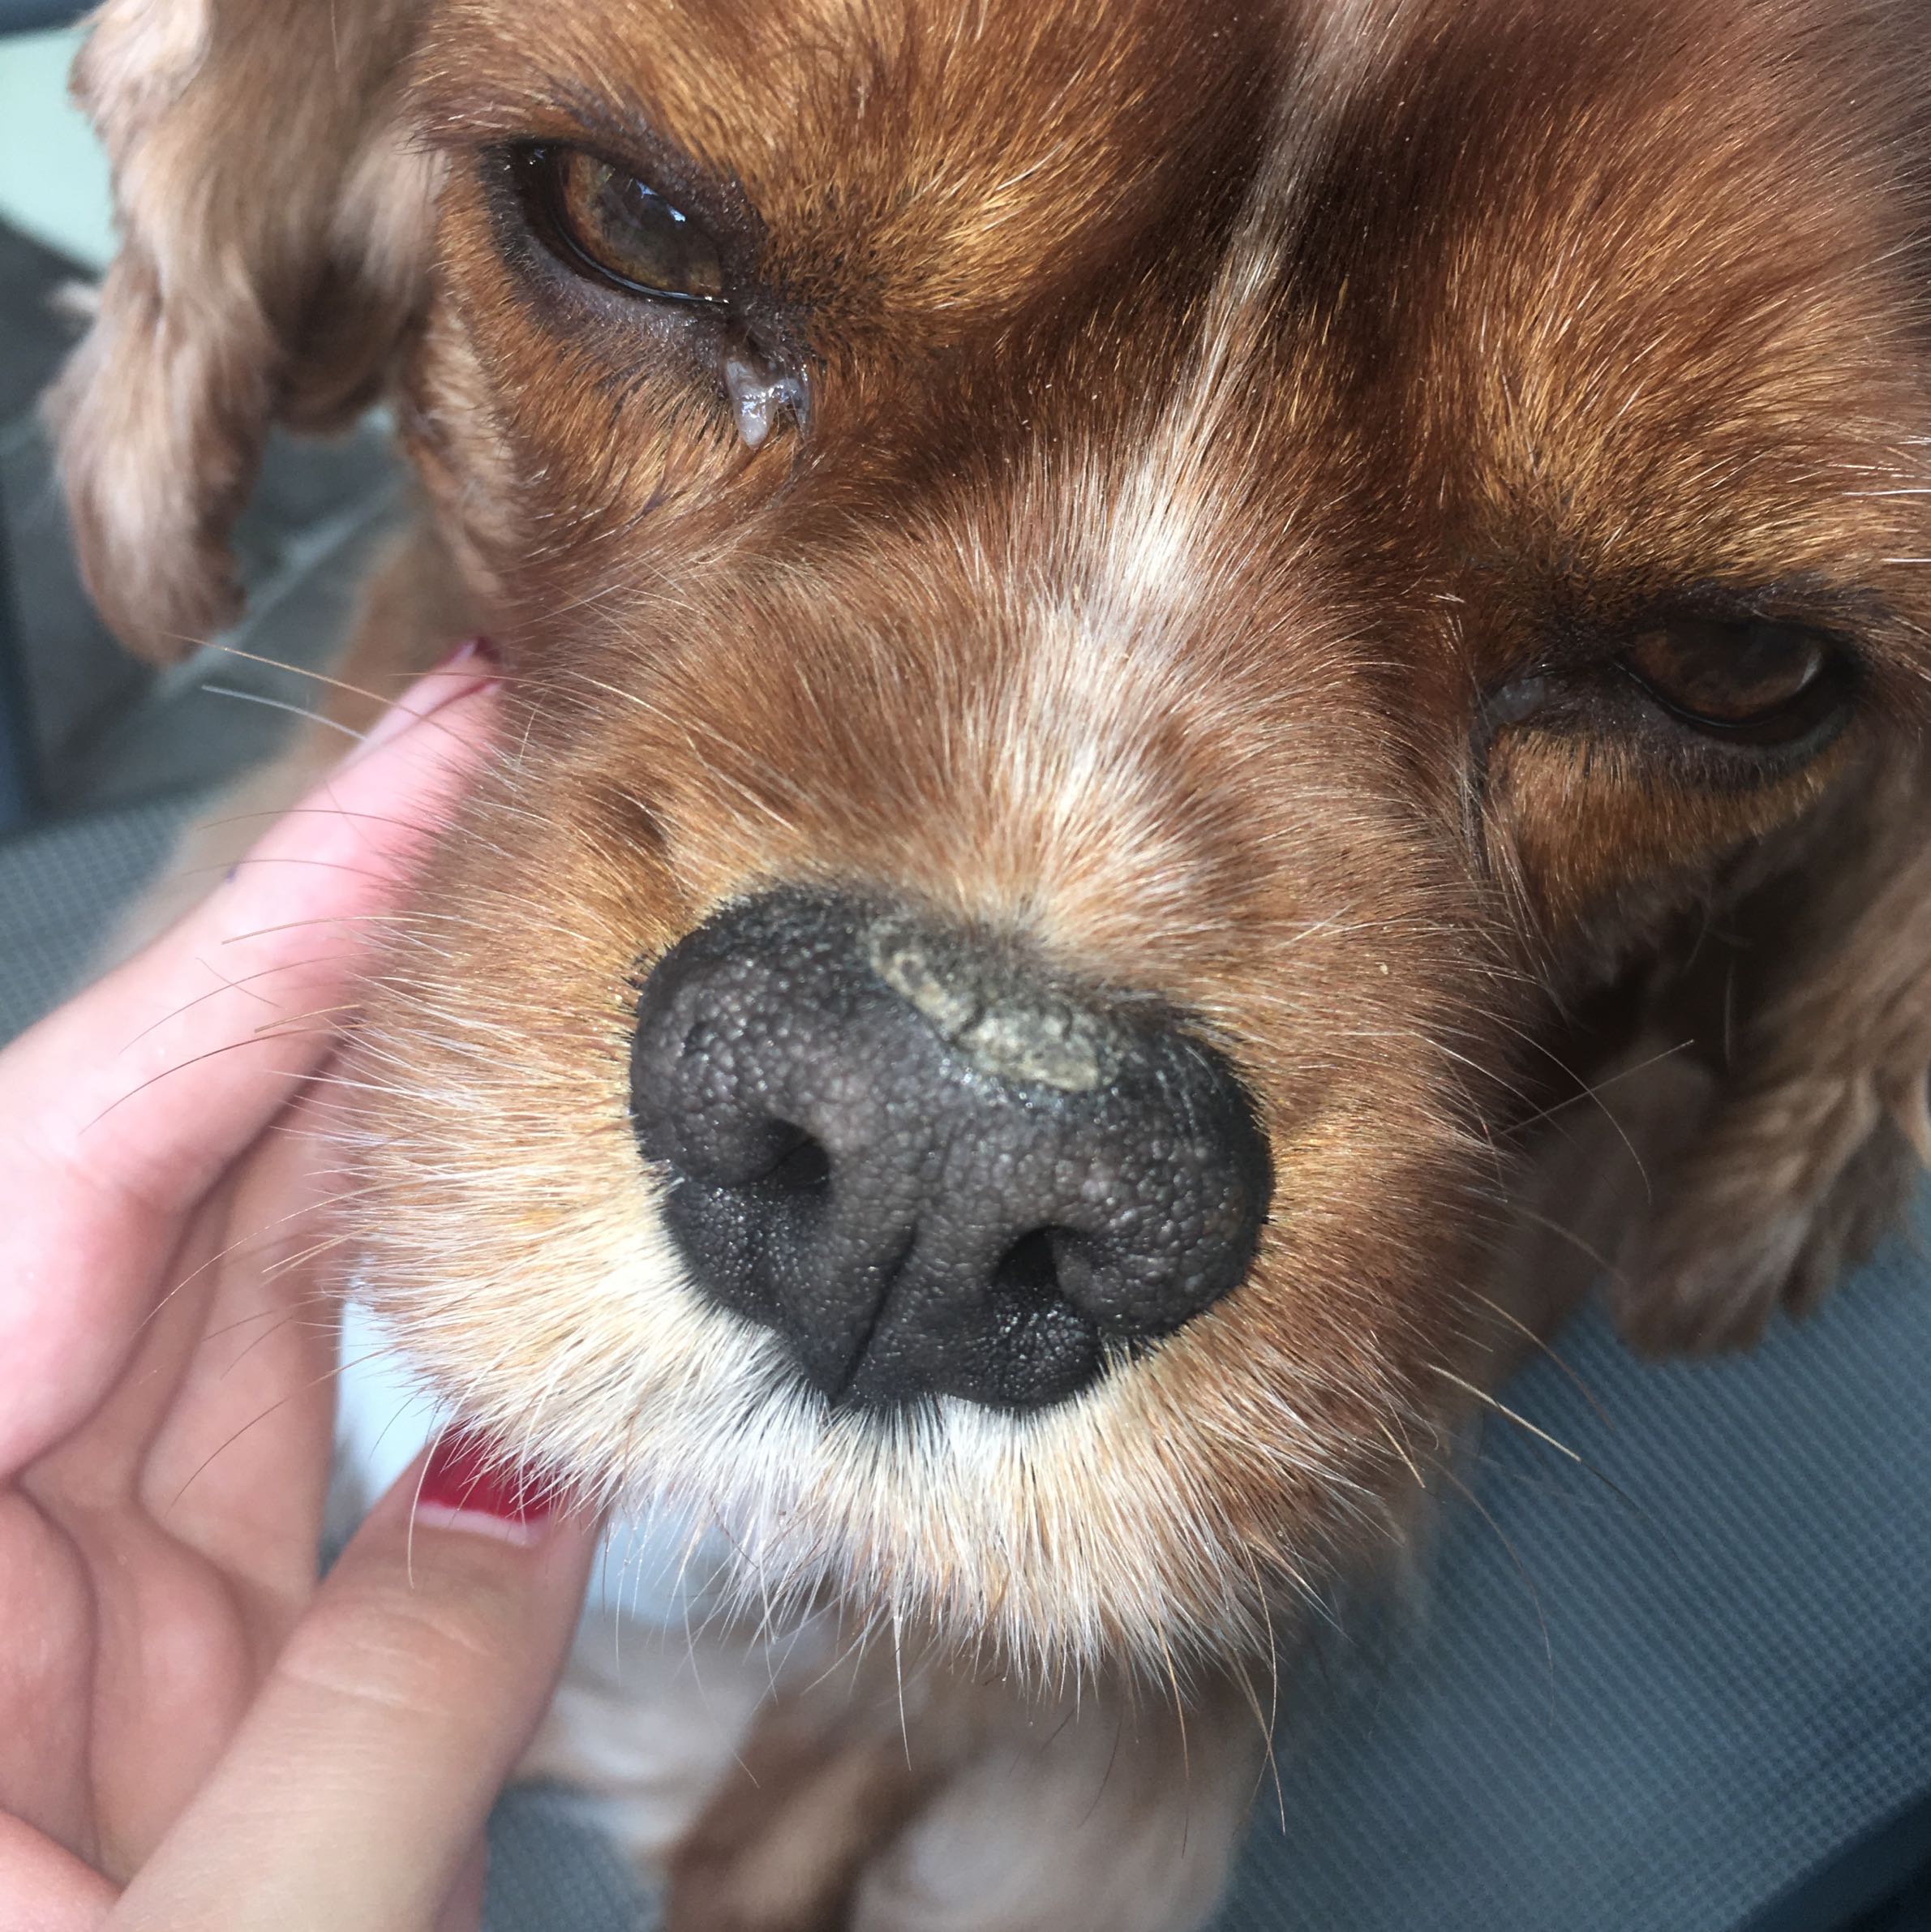 Mein Hund hat etwas komisches auf der Nase? (trockene Haut, dog)